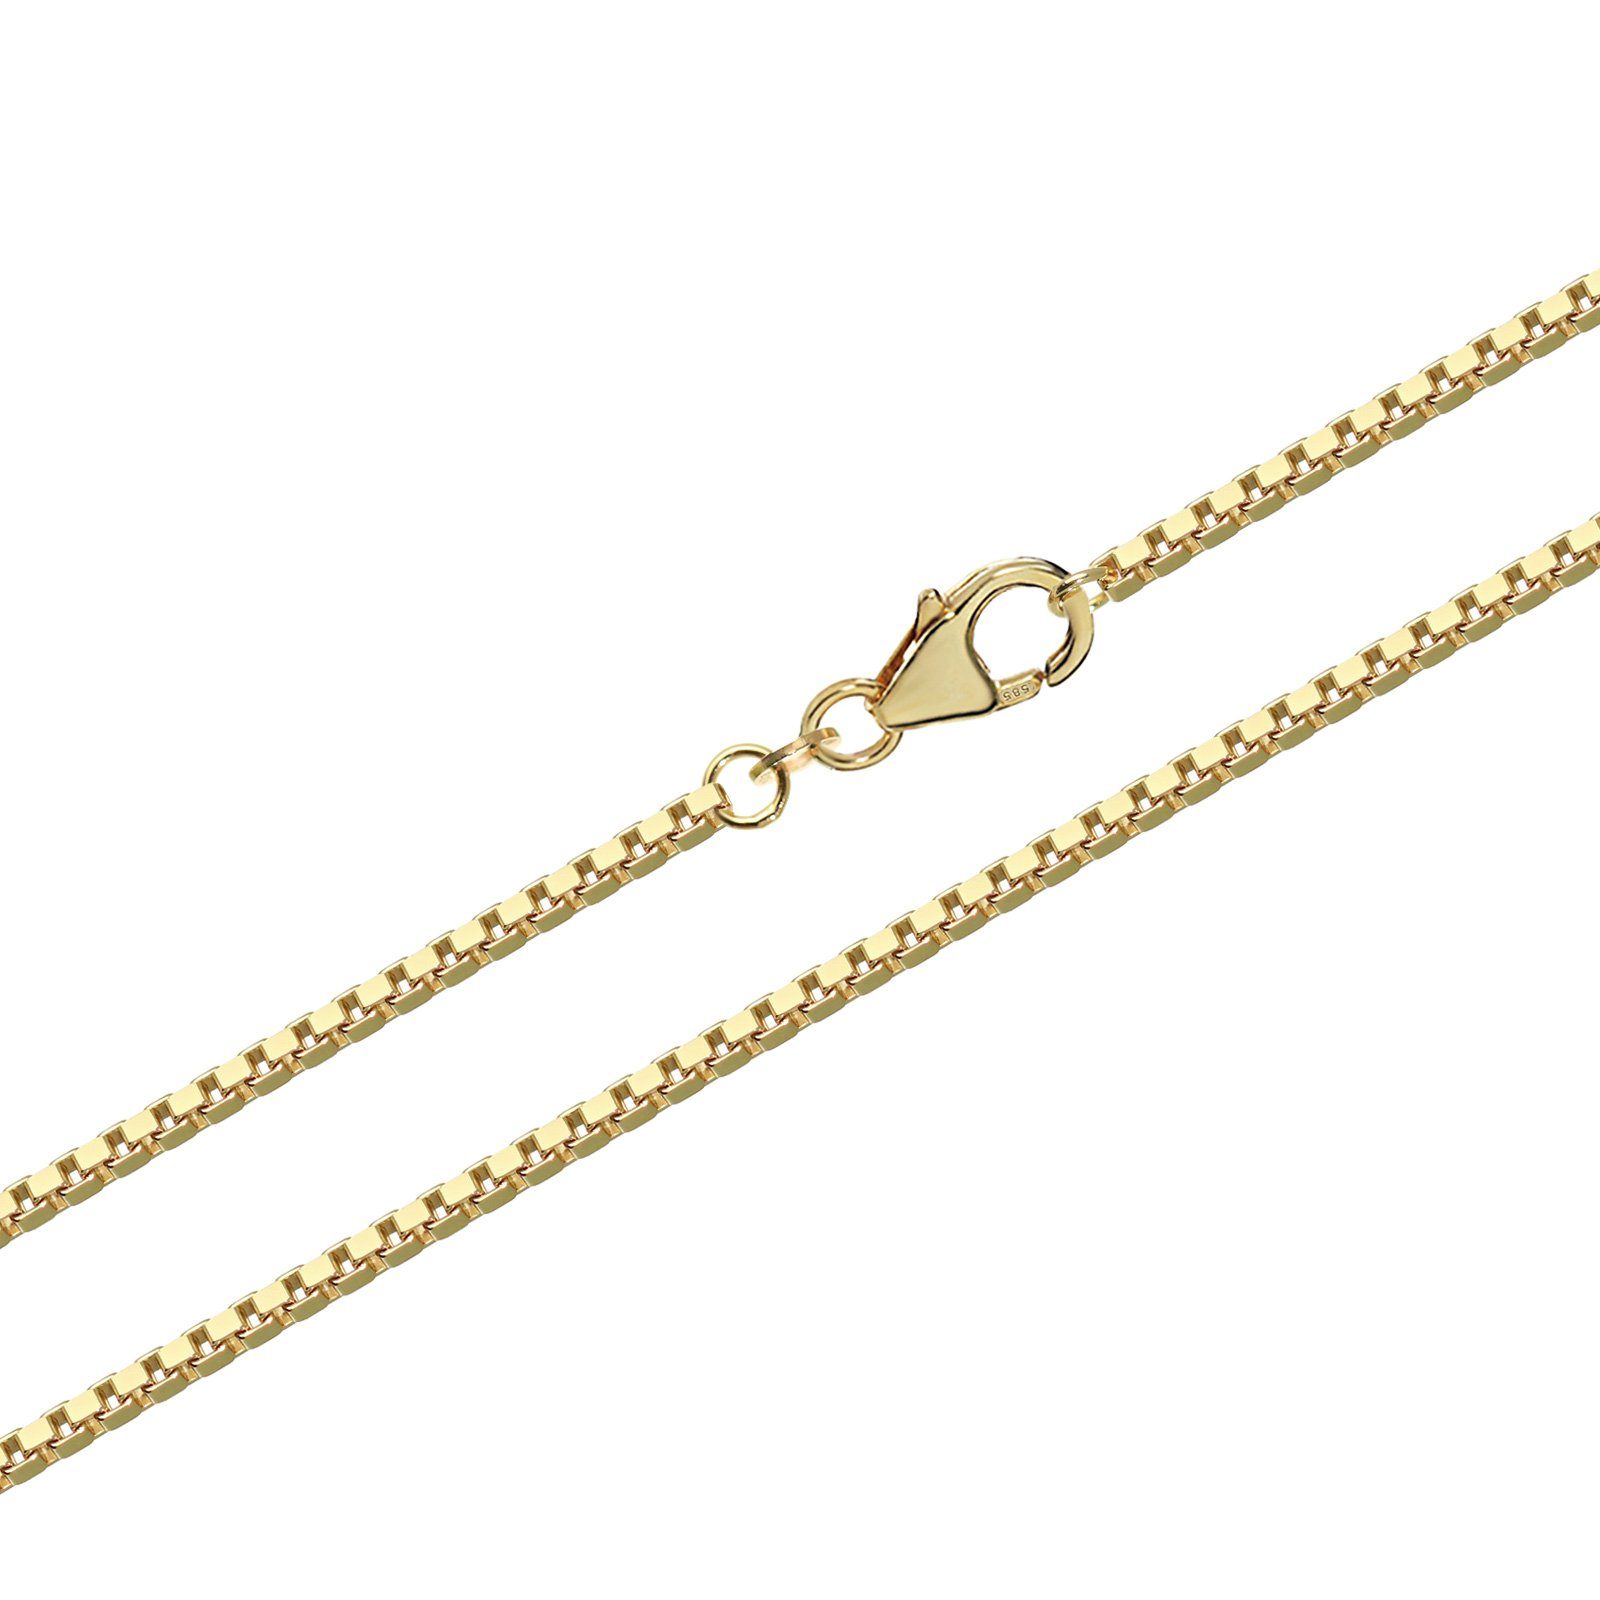 NKlaus füt Halskette Veneziane, Goldkette 14 Echte Venezia 60cm Kettenanhänger Karat Gelbgold 585